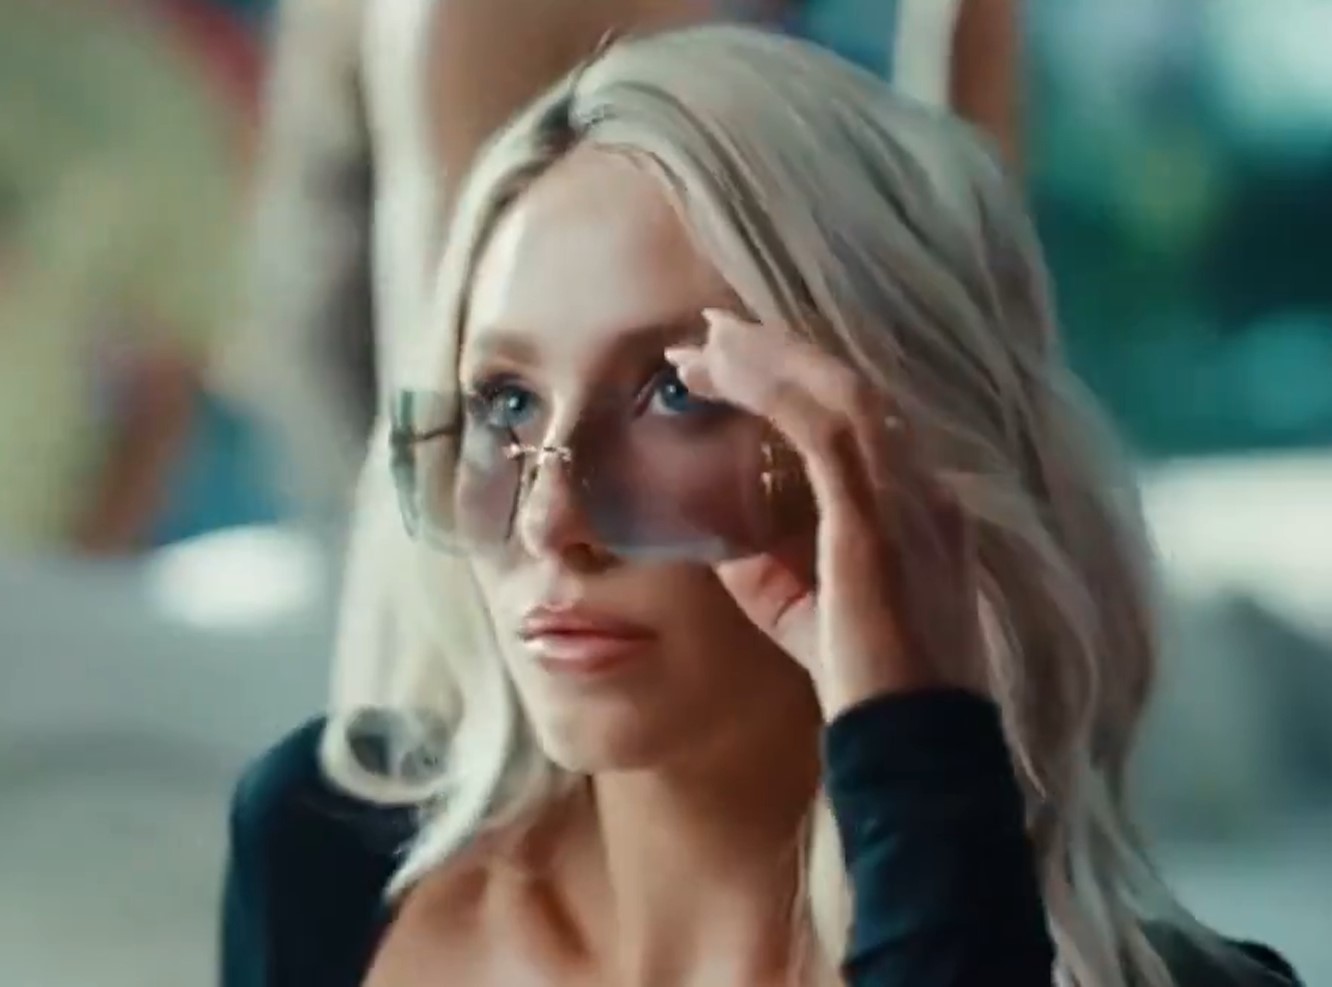 Dunne appeared in the video alongside fellow SI Swimsuit model Alix Earle